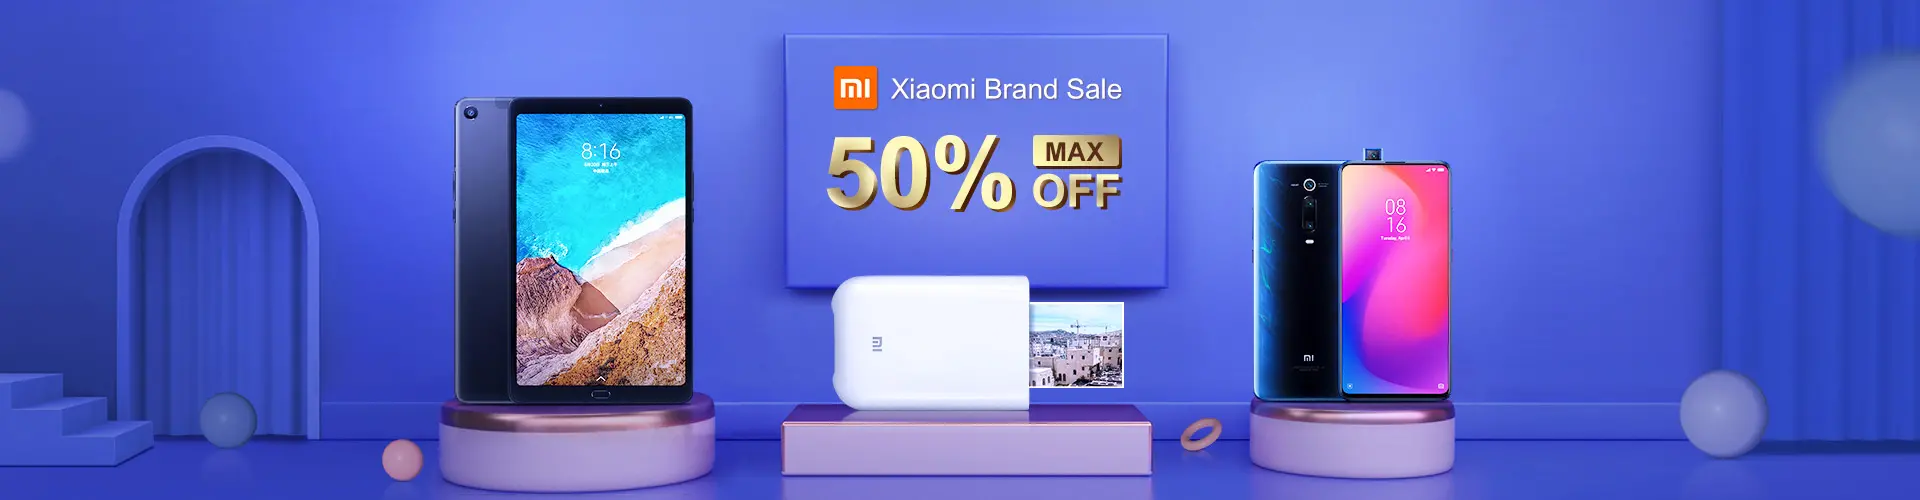 Banggood Xiaomi Brand Sale